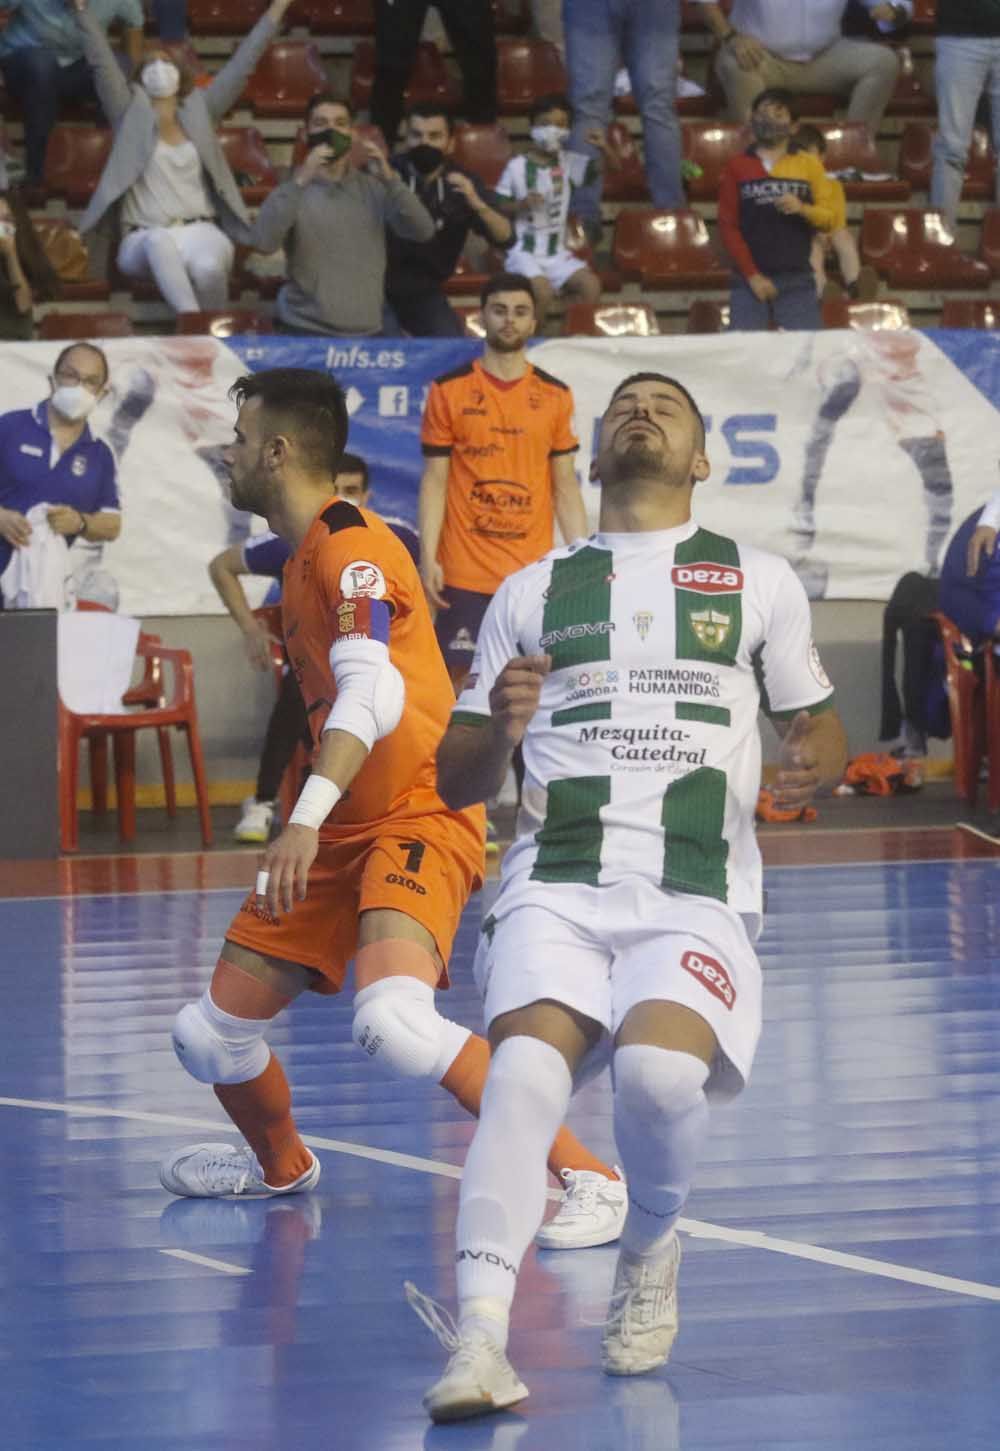 LNFS Córdoba Futsal Osasuna Magna